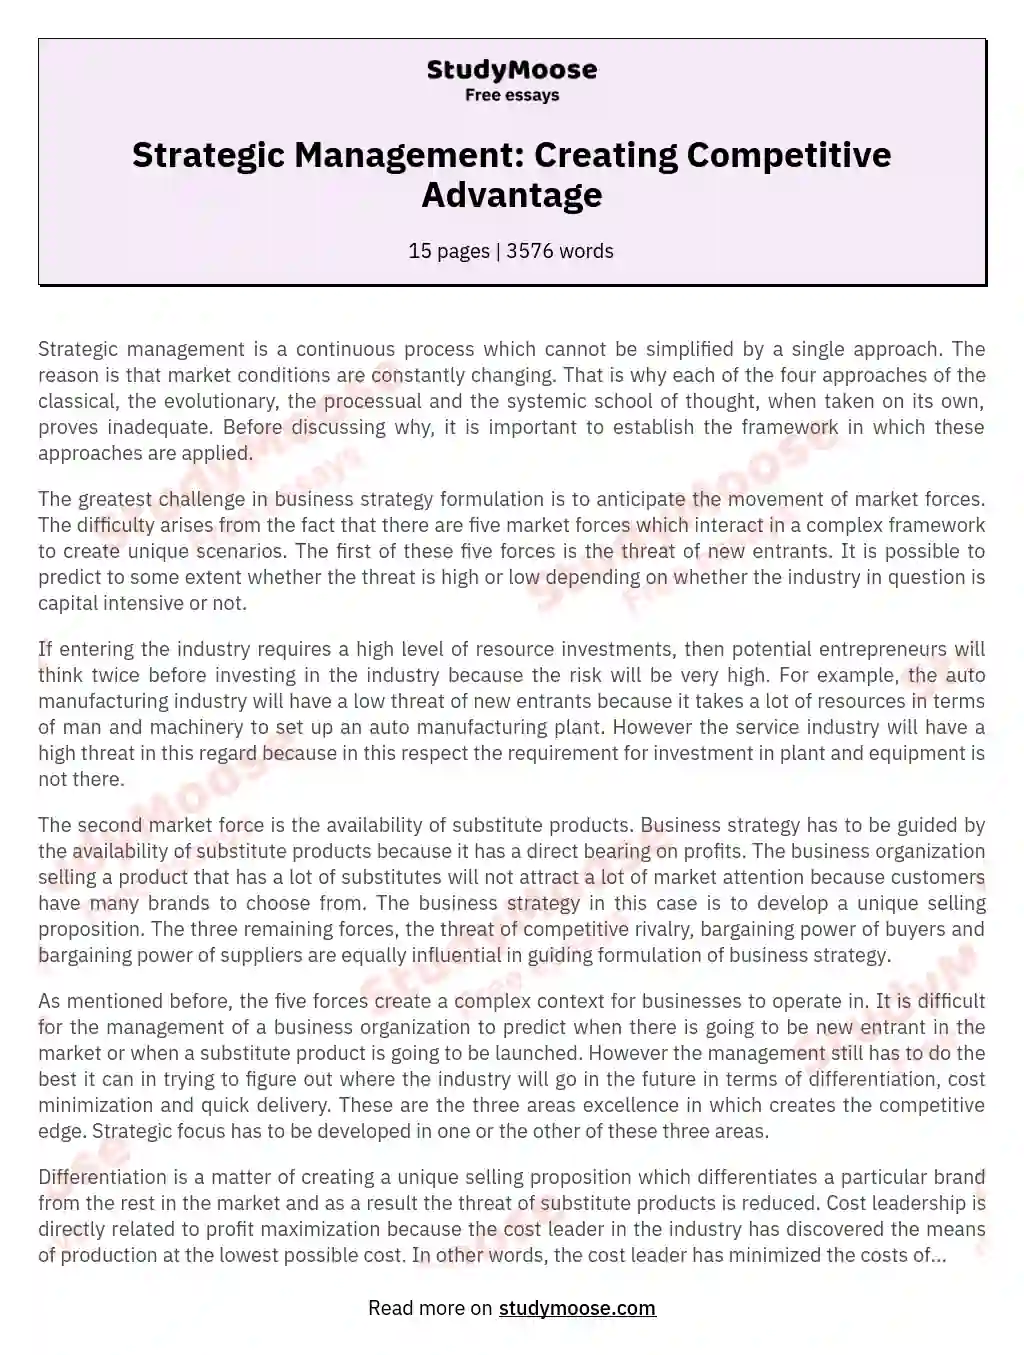 competitive advantage essay conclusion